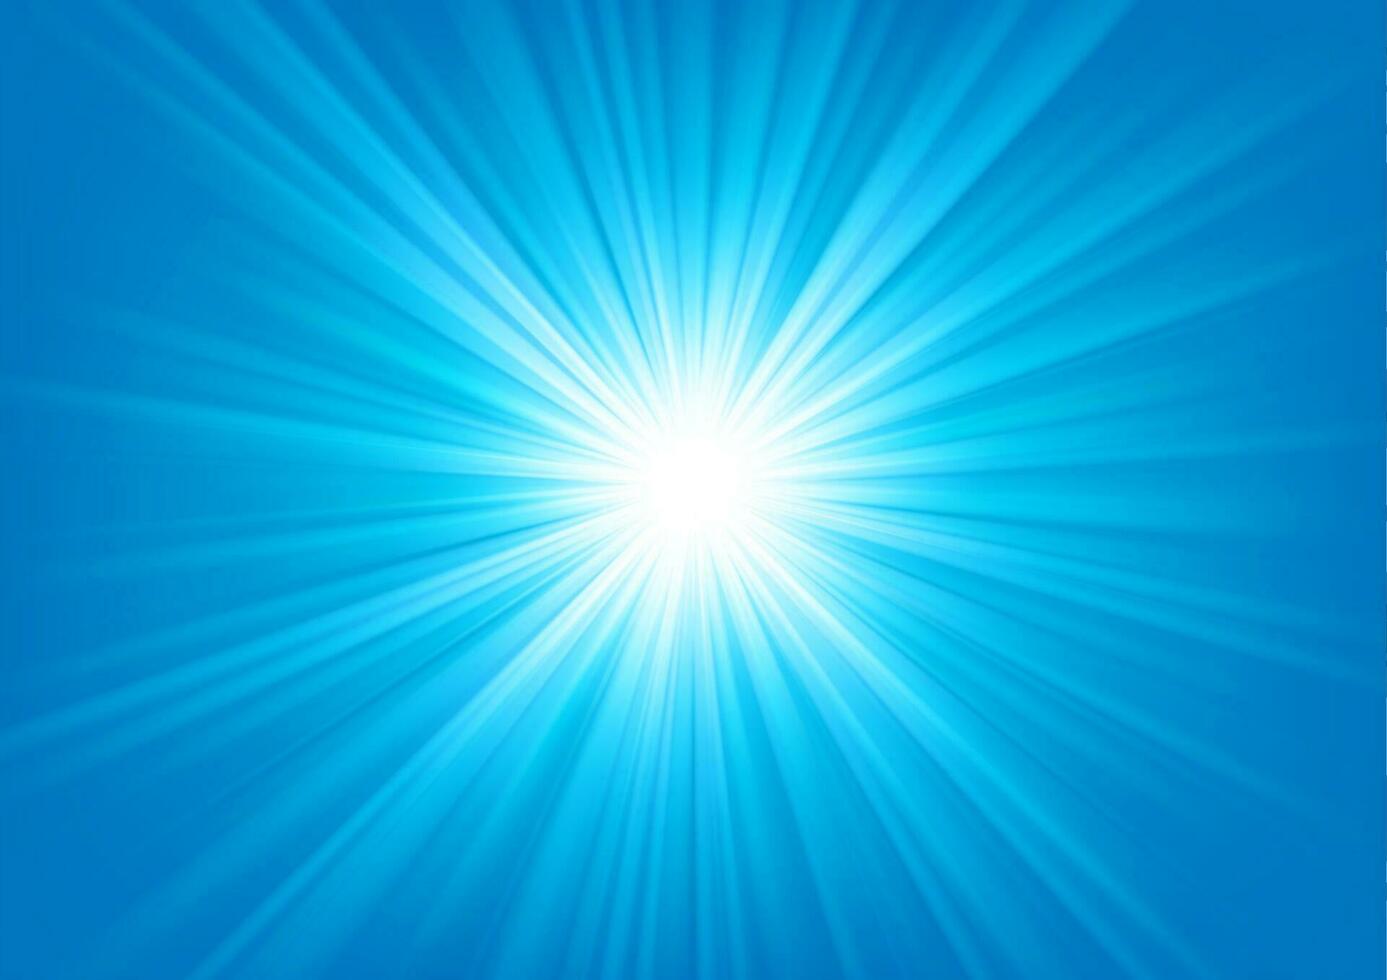 blu leggero splendente su luminosa sfondo, vettore illustrazione